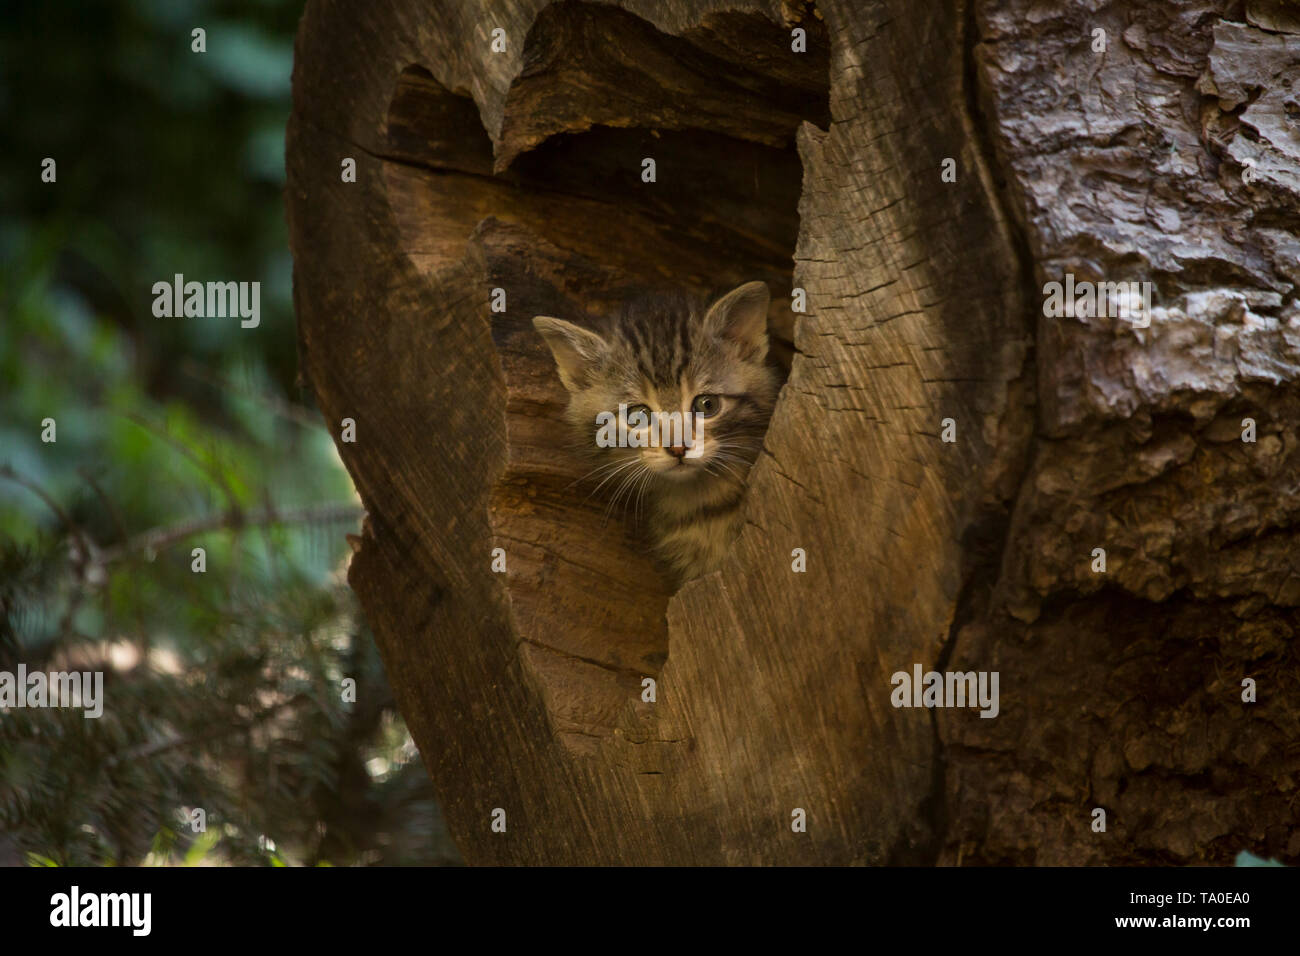 Die europäische Wildkatze (Felis Silvestris) - Kitten die Entdeckung der Höhle Umgebung, Spielen und verstecken sich in der Öffnung der einen Baumstamm. Stockfoto